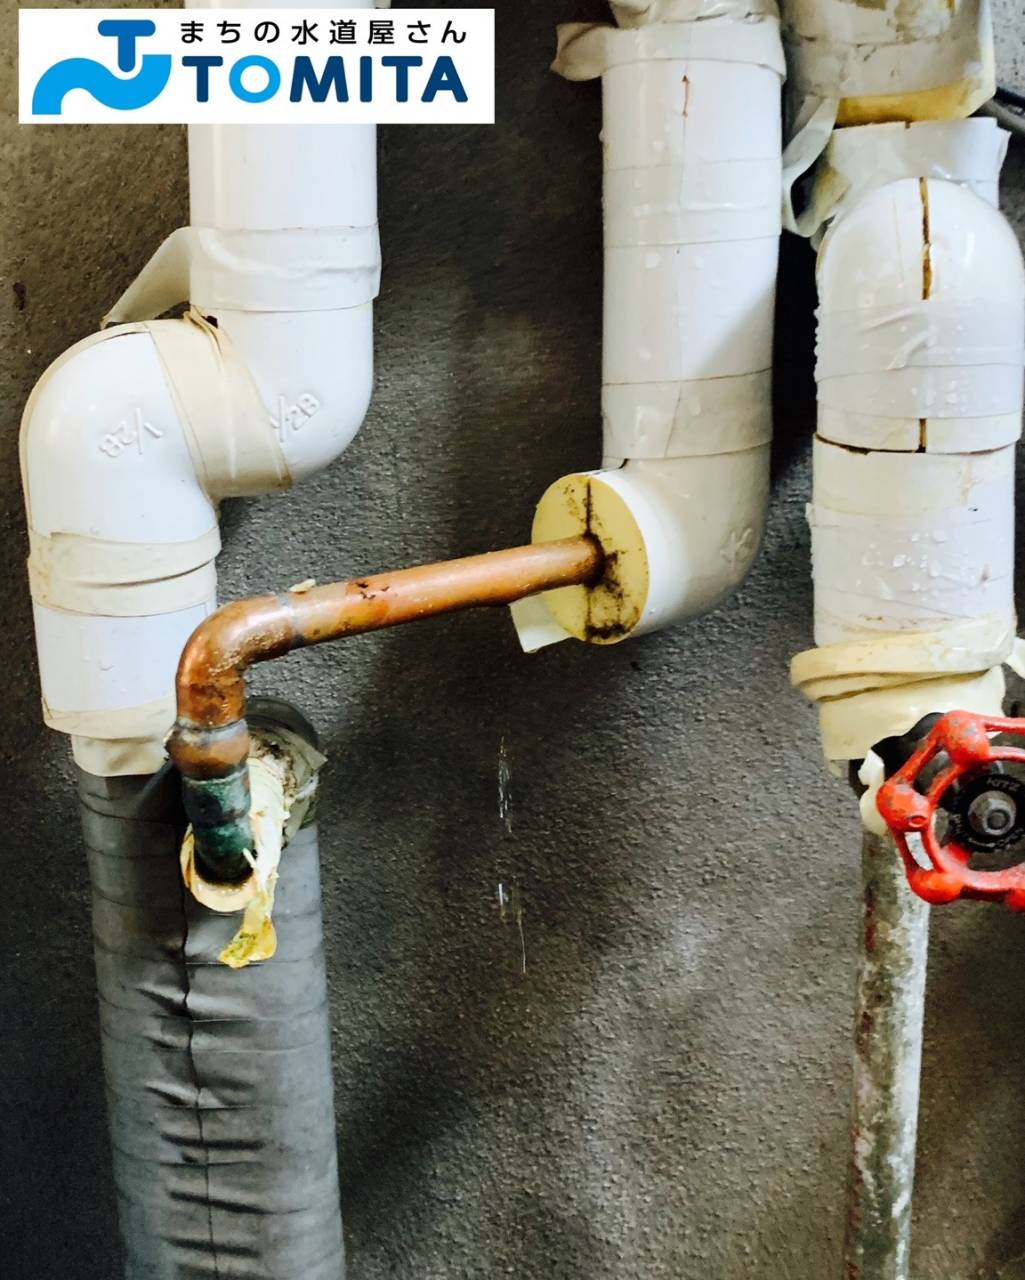 【施工前】配管から水漏れしている箇所を特定します。銅管の配管を撤去して、新しく配管しました。